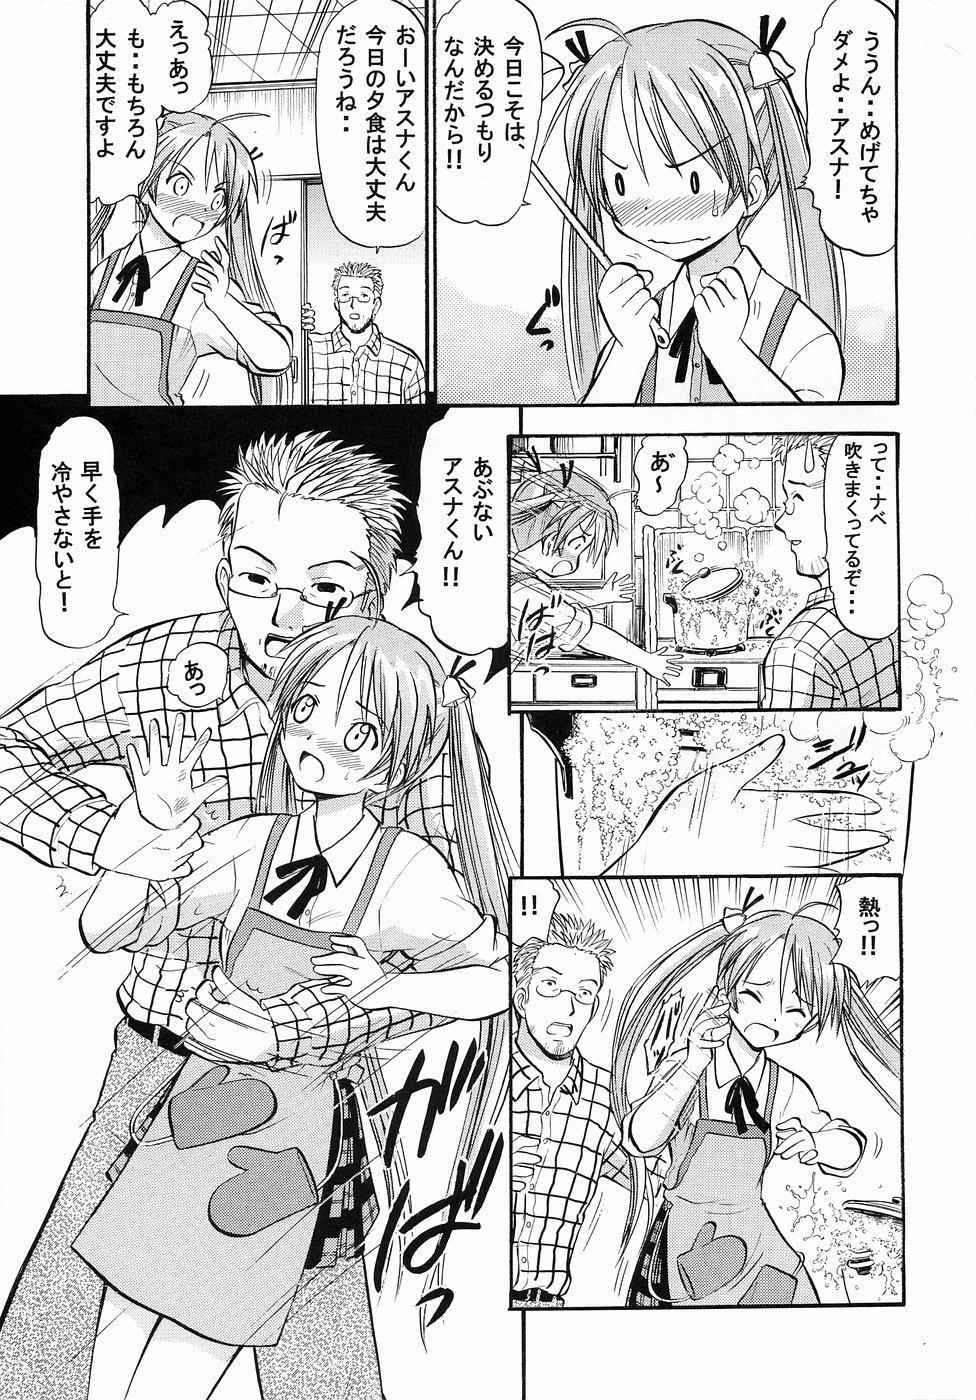 Asians Asuna no Koi Suru Heart - Mahou sensei negima Uniform - Page 4